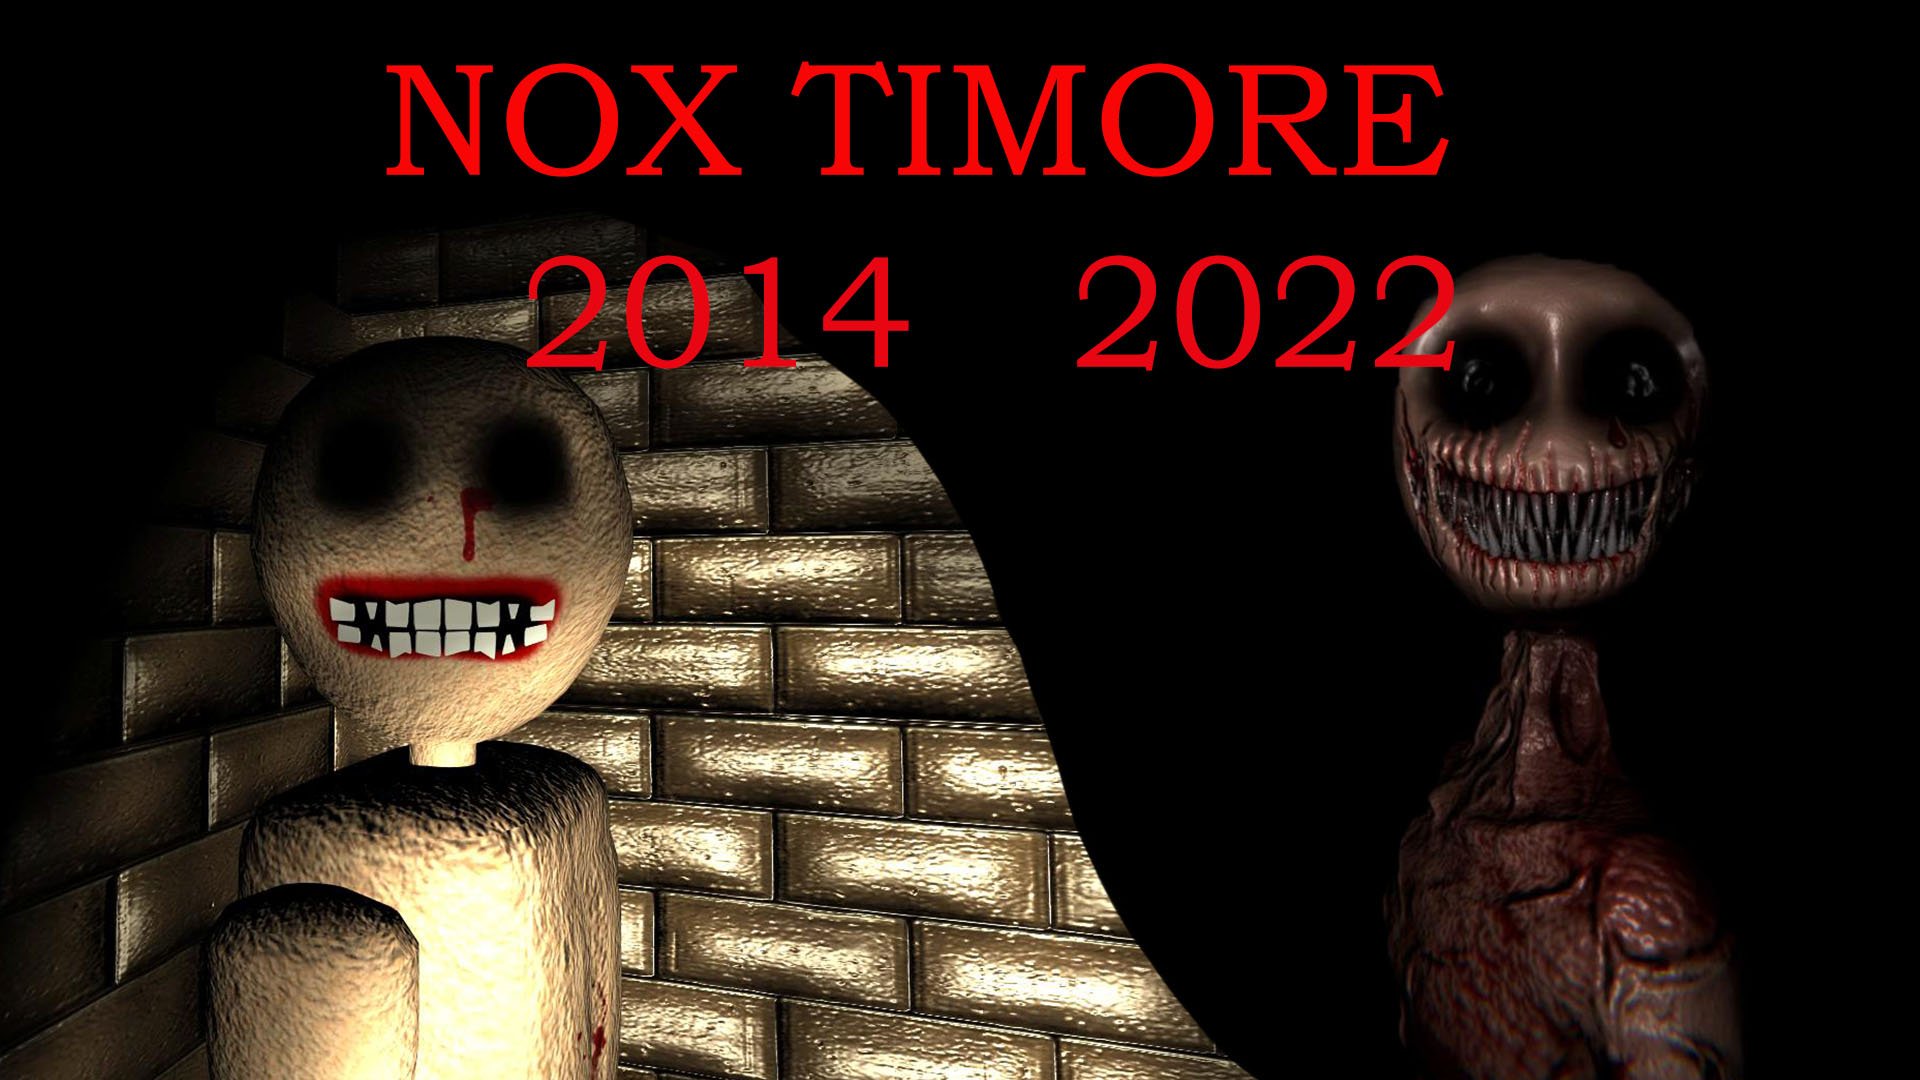 Инди-хоррор Nox Timore. Версии от 2014 и 2022 года. Страшные манекены стали еще страшней?!